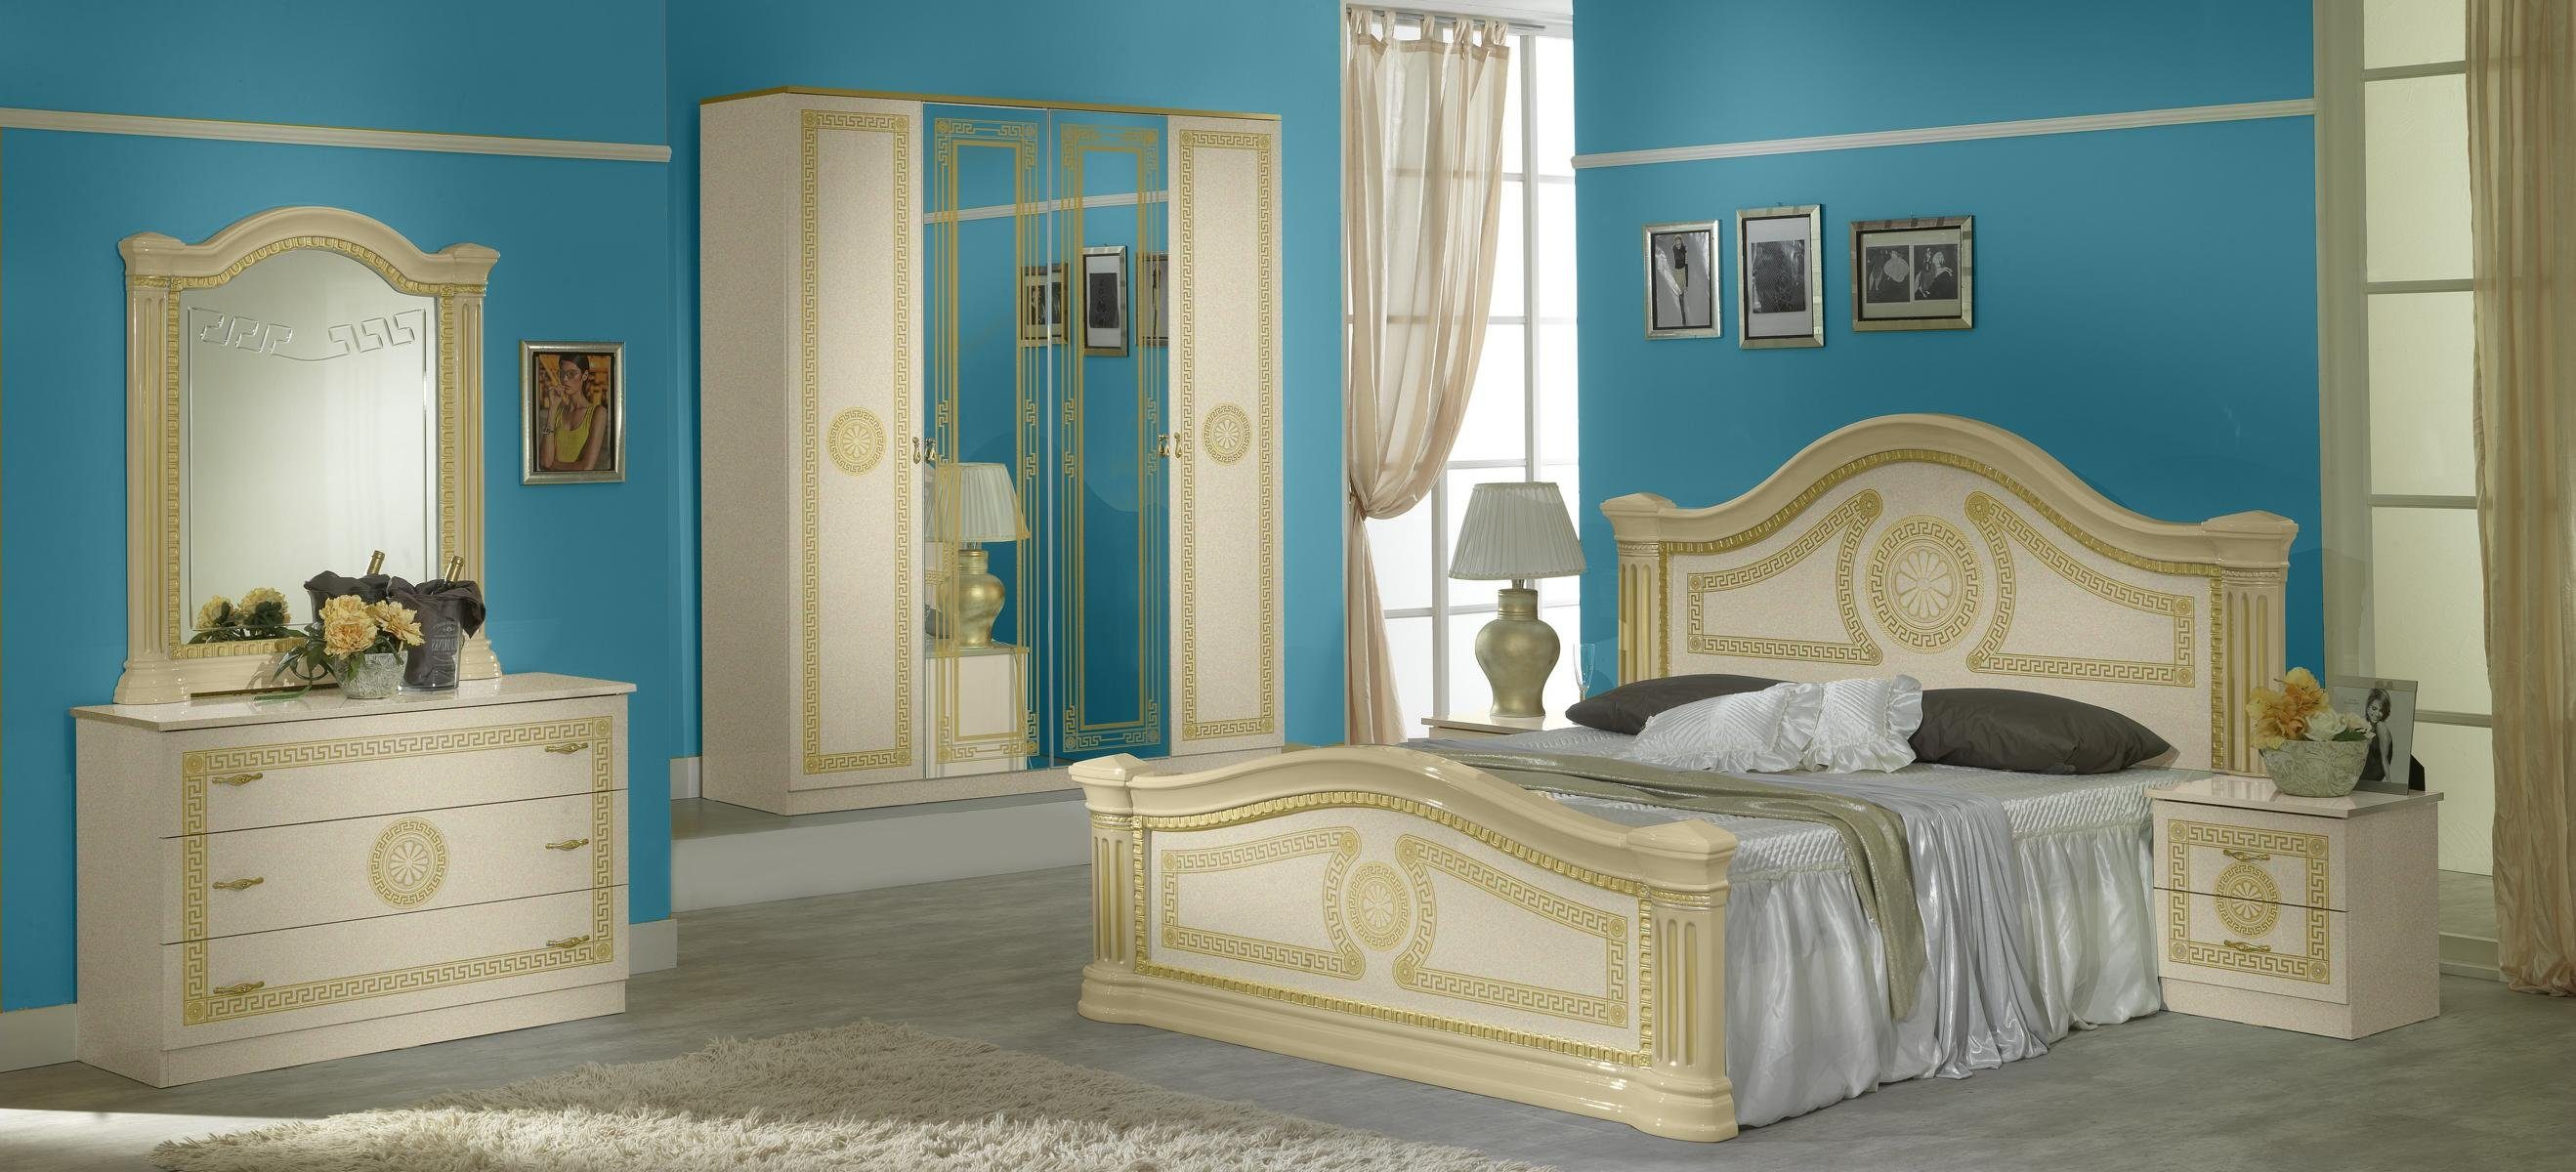 JVmoebel Schlafzimmer-Set Luxus Schlafzimmer Klassisches Holz Bett Nachttisch 6tlg Design